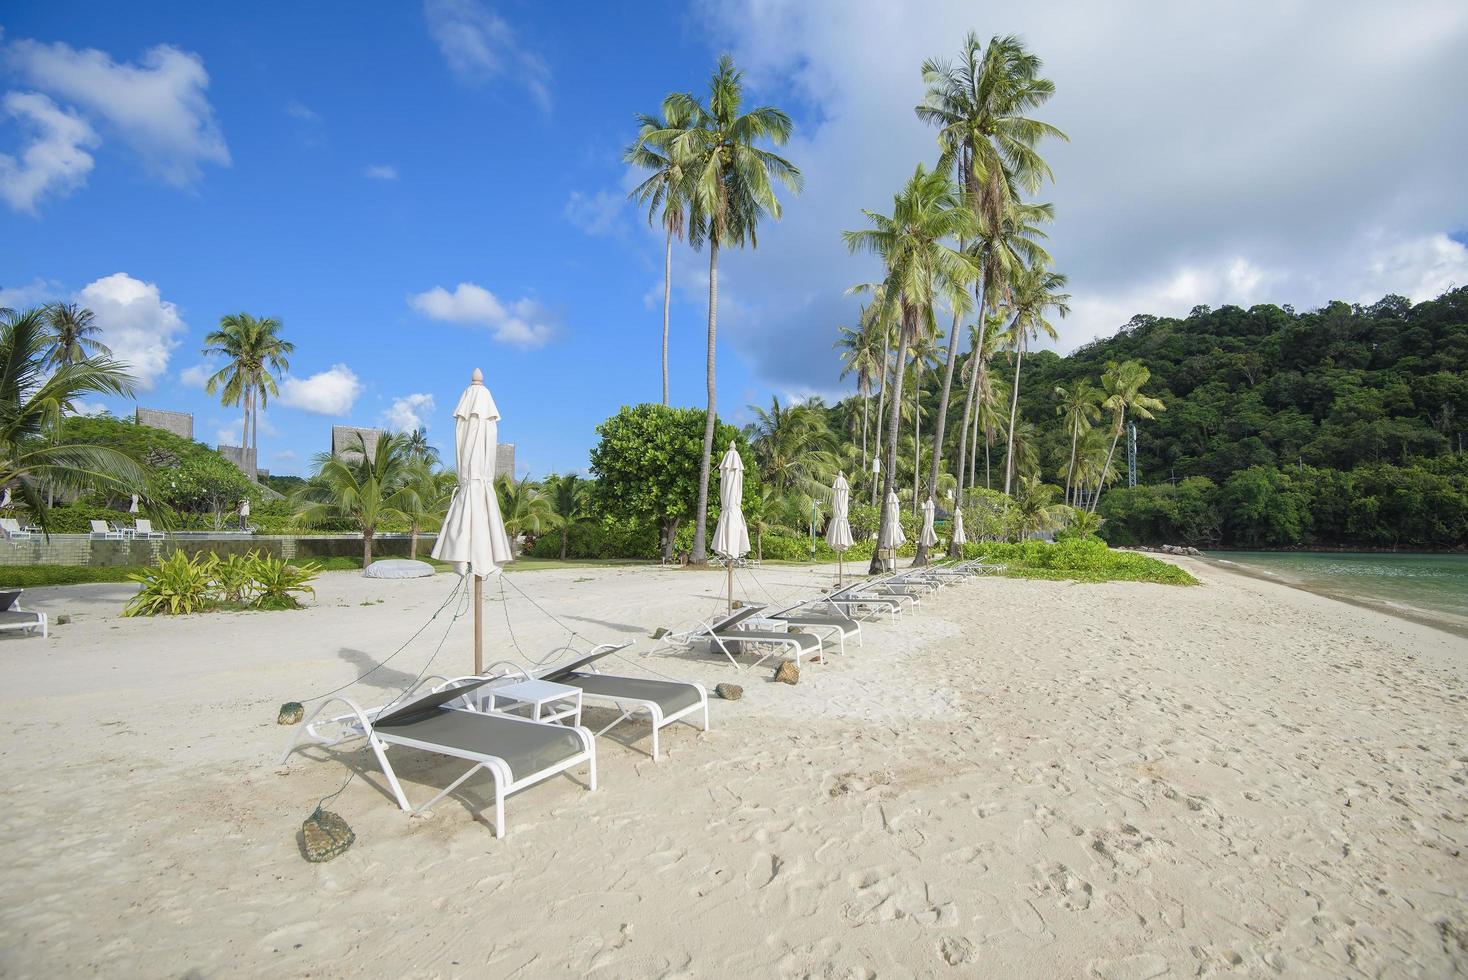 bella vista paesaggio di sedie a sdraio sulla spiaggia tropicale, il mare color smeraldo e la sabbia bianca contro il cielo blu, maya bay nell'isola di phi phi, tailandia foto